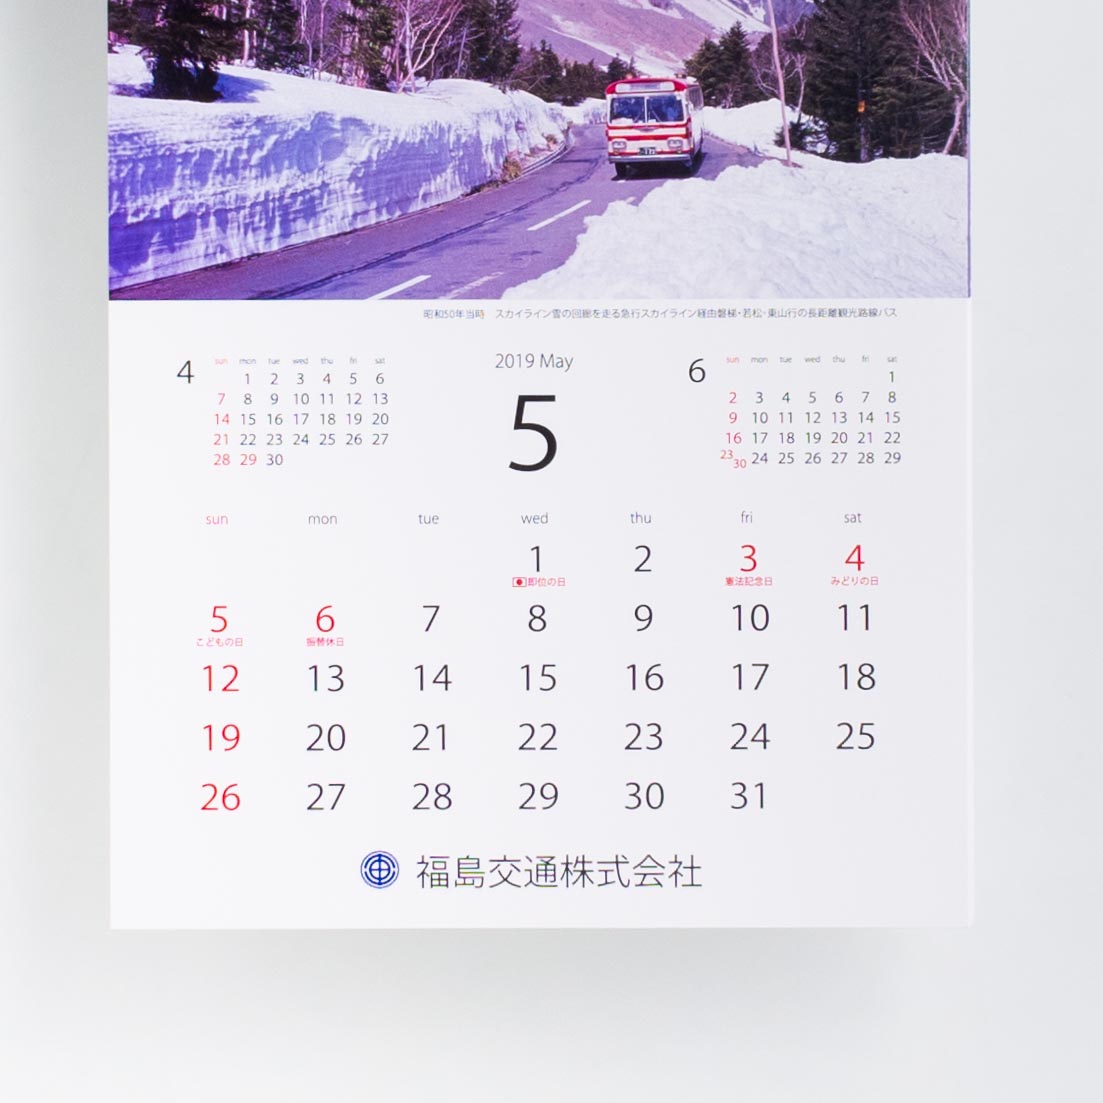 「福島交通株式会社 様」製作のオリジナルカレンダー ギャラリー写真2